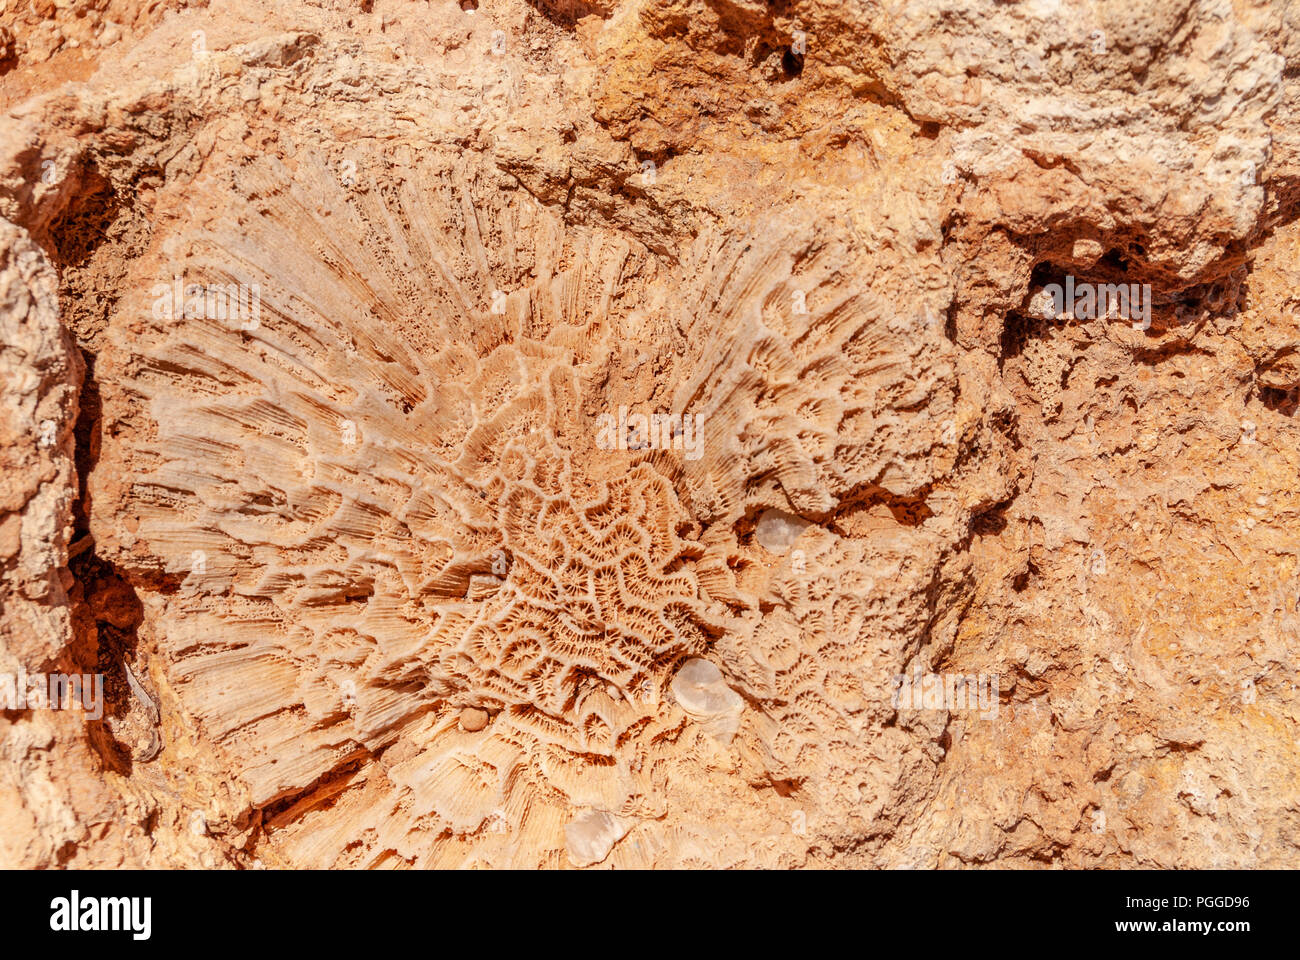 Exmouth, dans l'ouest de l'Australie - Novembre 27, 2009 Gros plan : de grands polypes de corail fossilisé à red rock formes large pétale de fleur avec maze comme détails. Banque D'Images